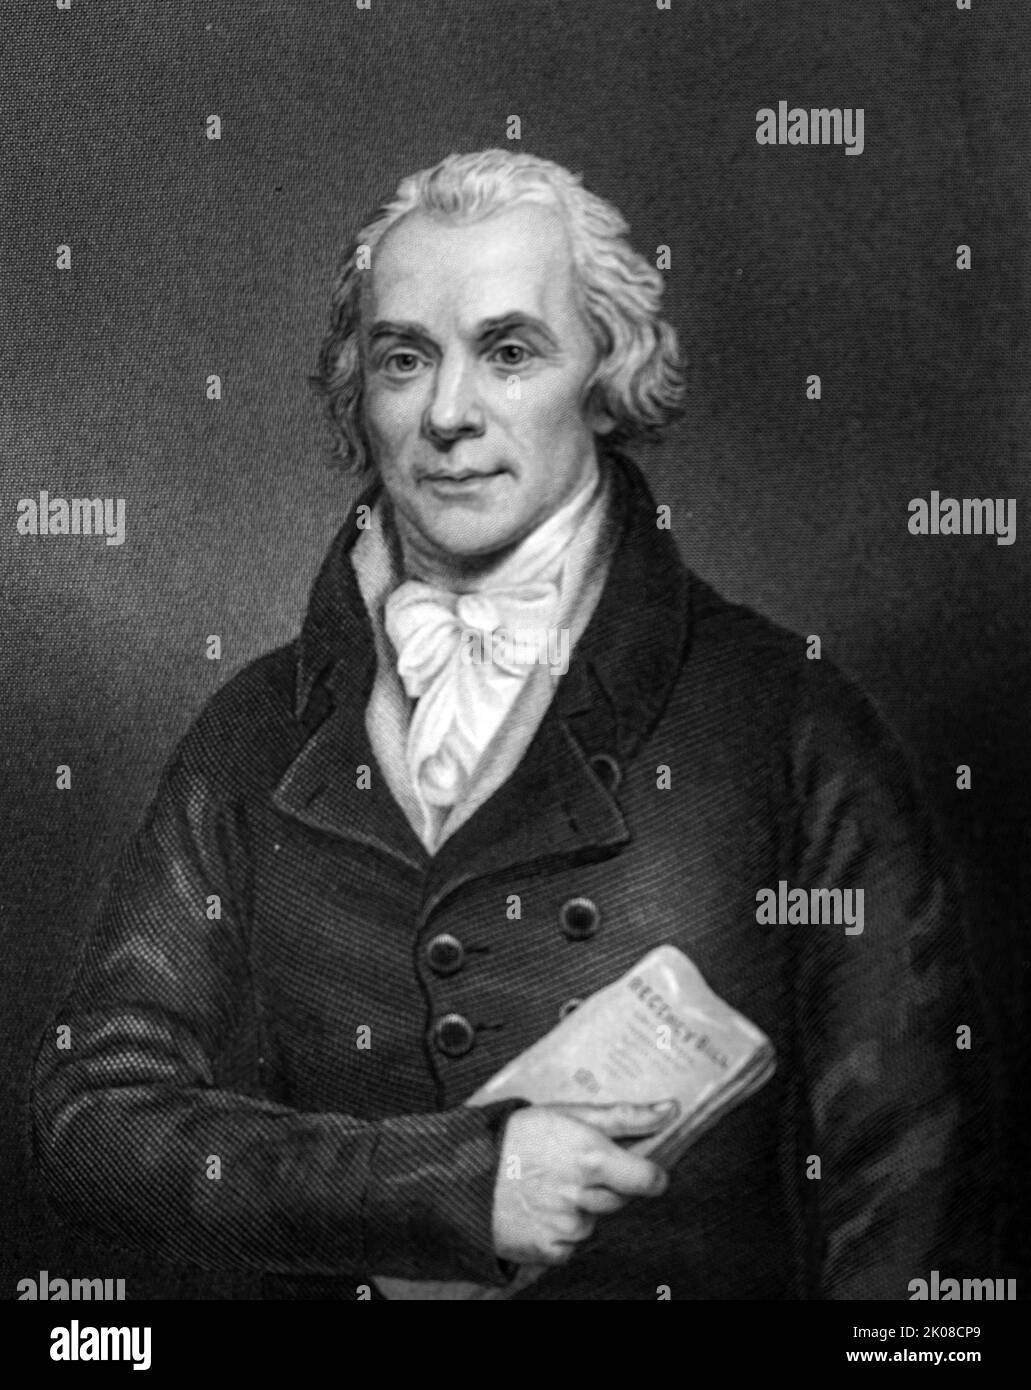 Spencer Perceval KC (1. November 1762 - 11. Mai 1812) war ein britischer Staatsmann und Rechtsanwalt, der von Oktober 1809 bis zu seiner Tötung im Mai 1812 als Premierminister des Vereinigten Königreichs diente. Perceval ist der einzige britische Premierminister, der ermordet wurde, und der einzige Generalanwalt oder Generalanwalt, der Premierminister geworden ist Stockfoto